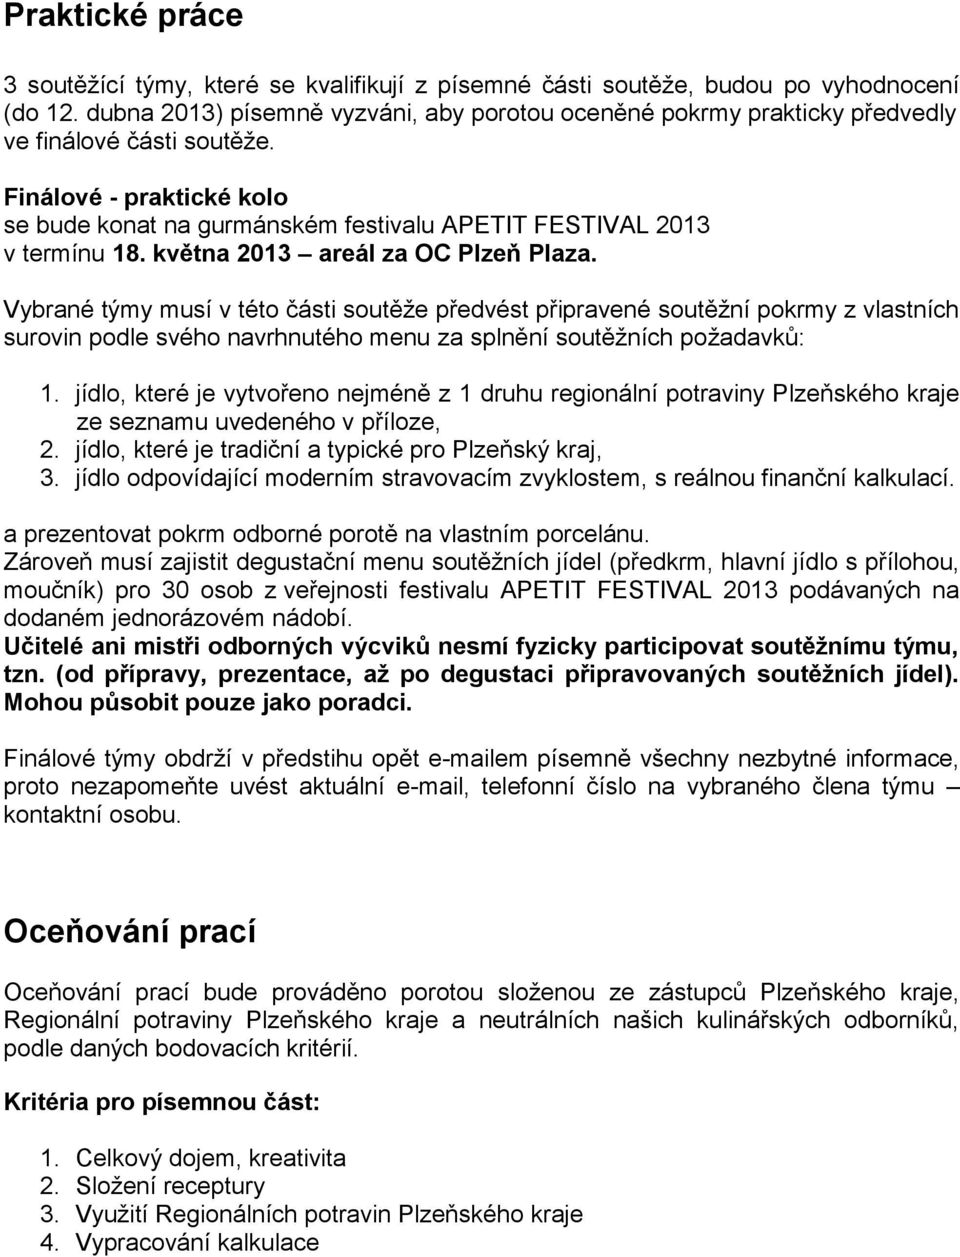 Finálové - praktické kolo se bude konat na gurmánském festivalu APETIT FESTIVAL 2013 v termínu 18. května 2013 areál za OC Plzeň Plaza.